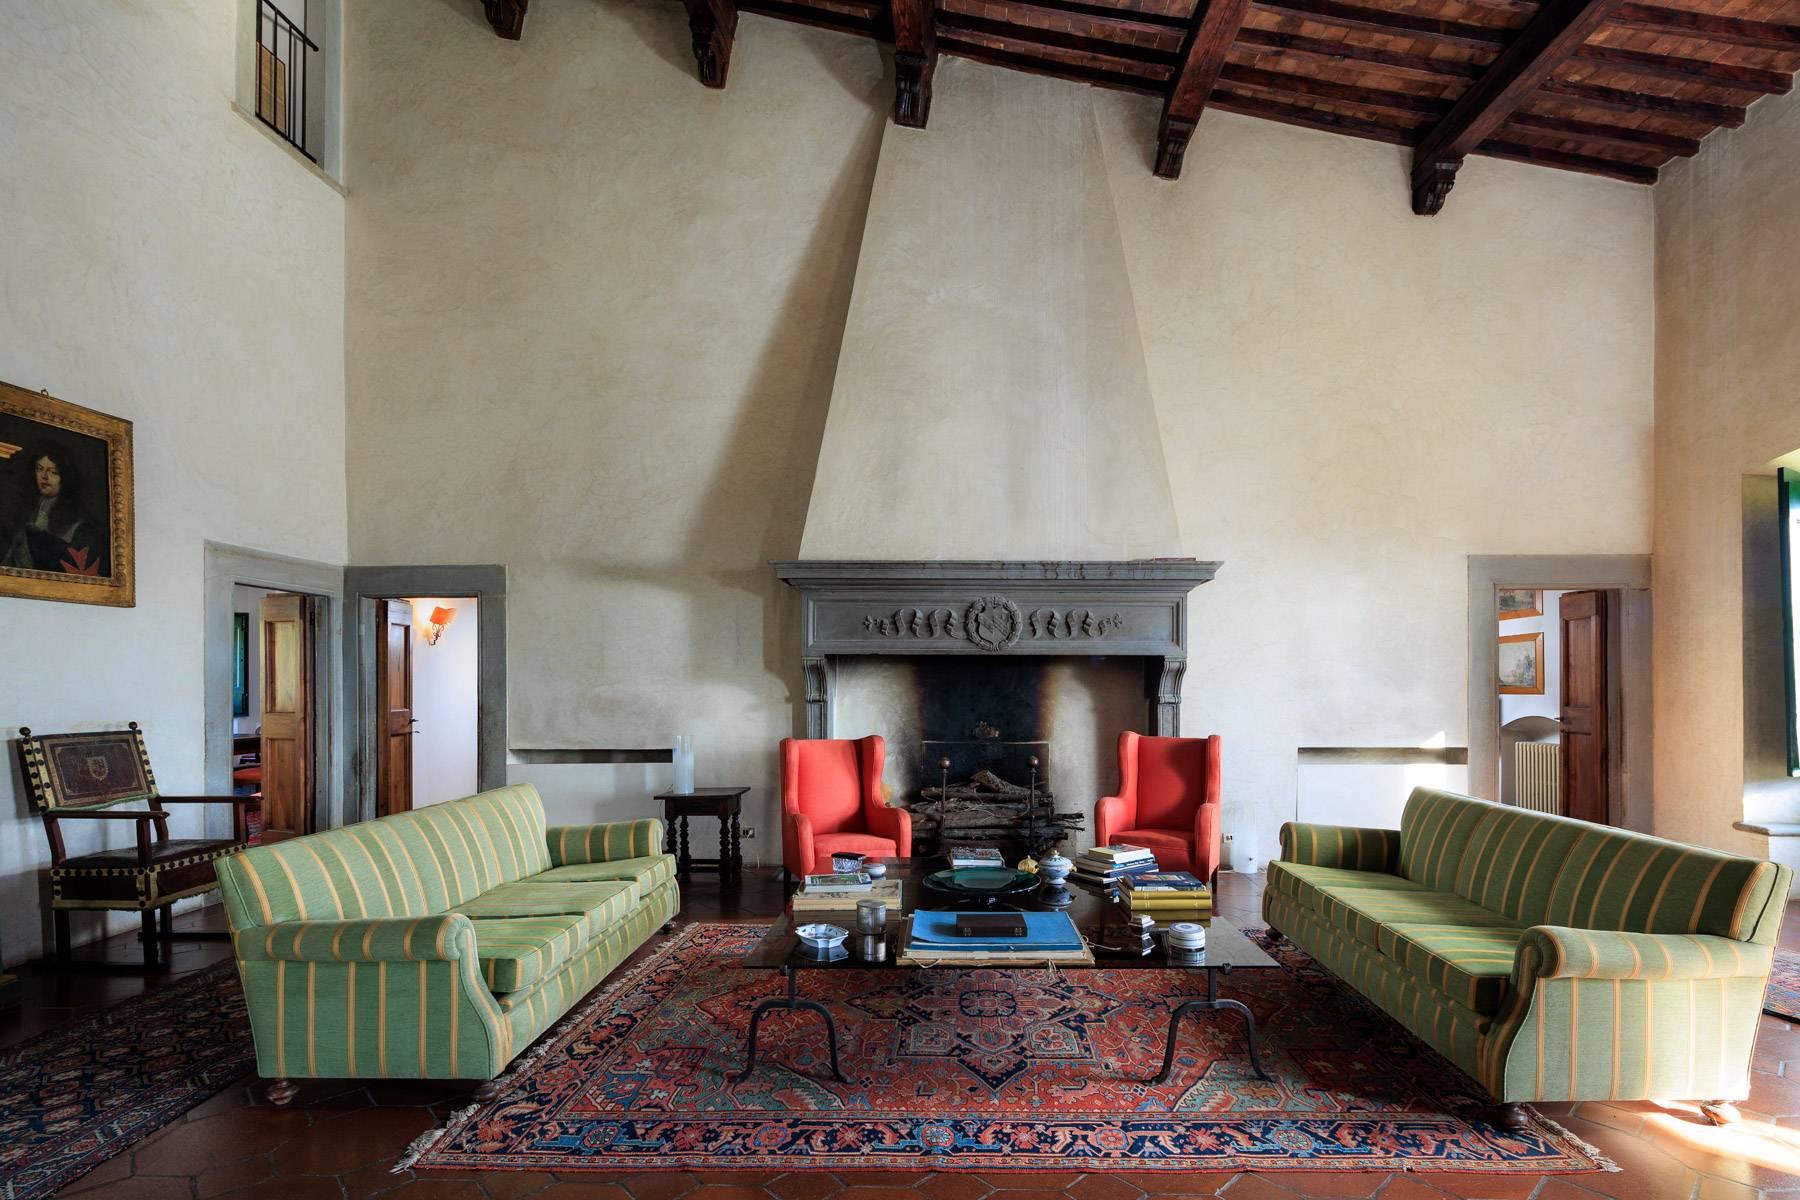 Grande villa padronale d'epoca nella più rinomata zona olearia vicino a Firenze - 6